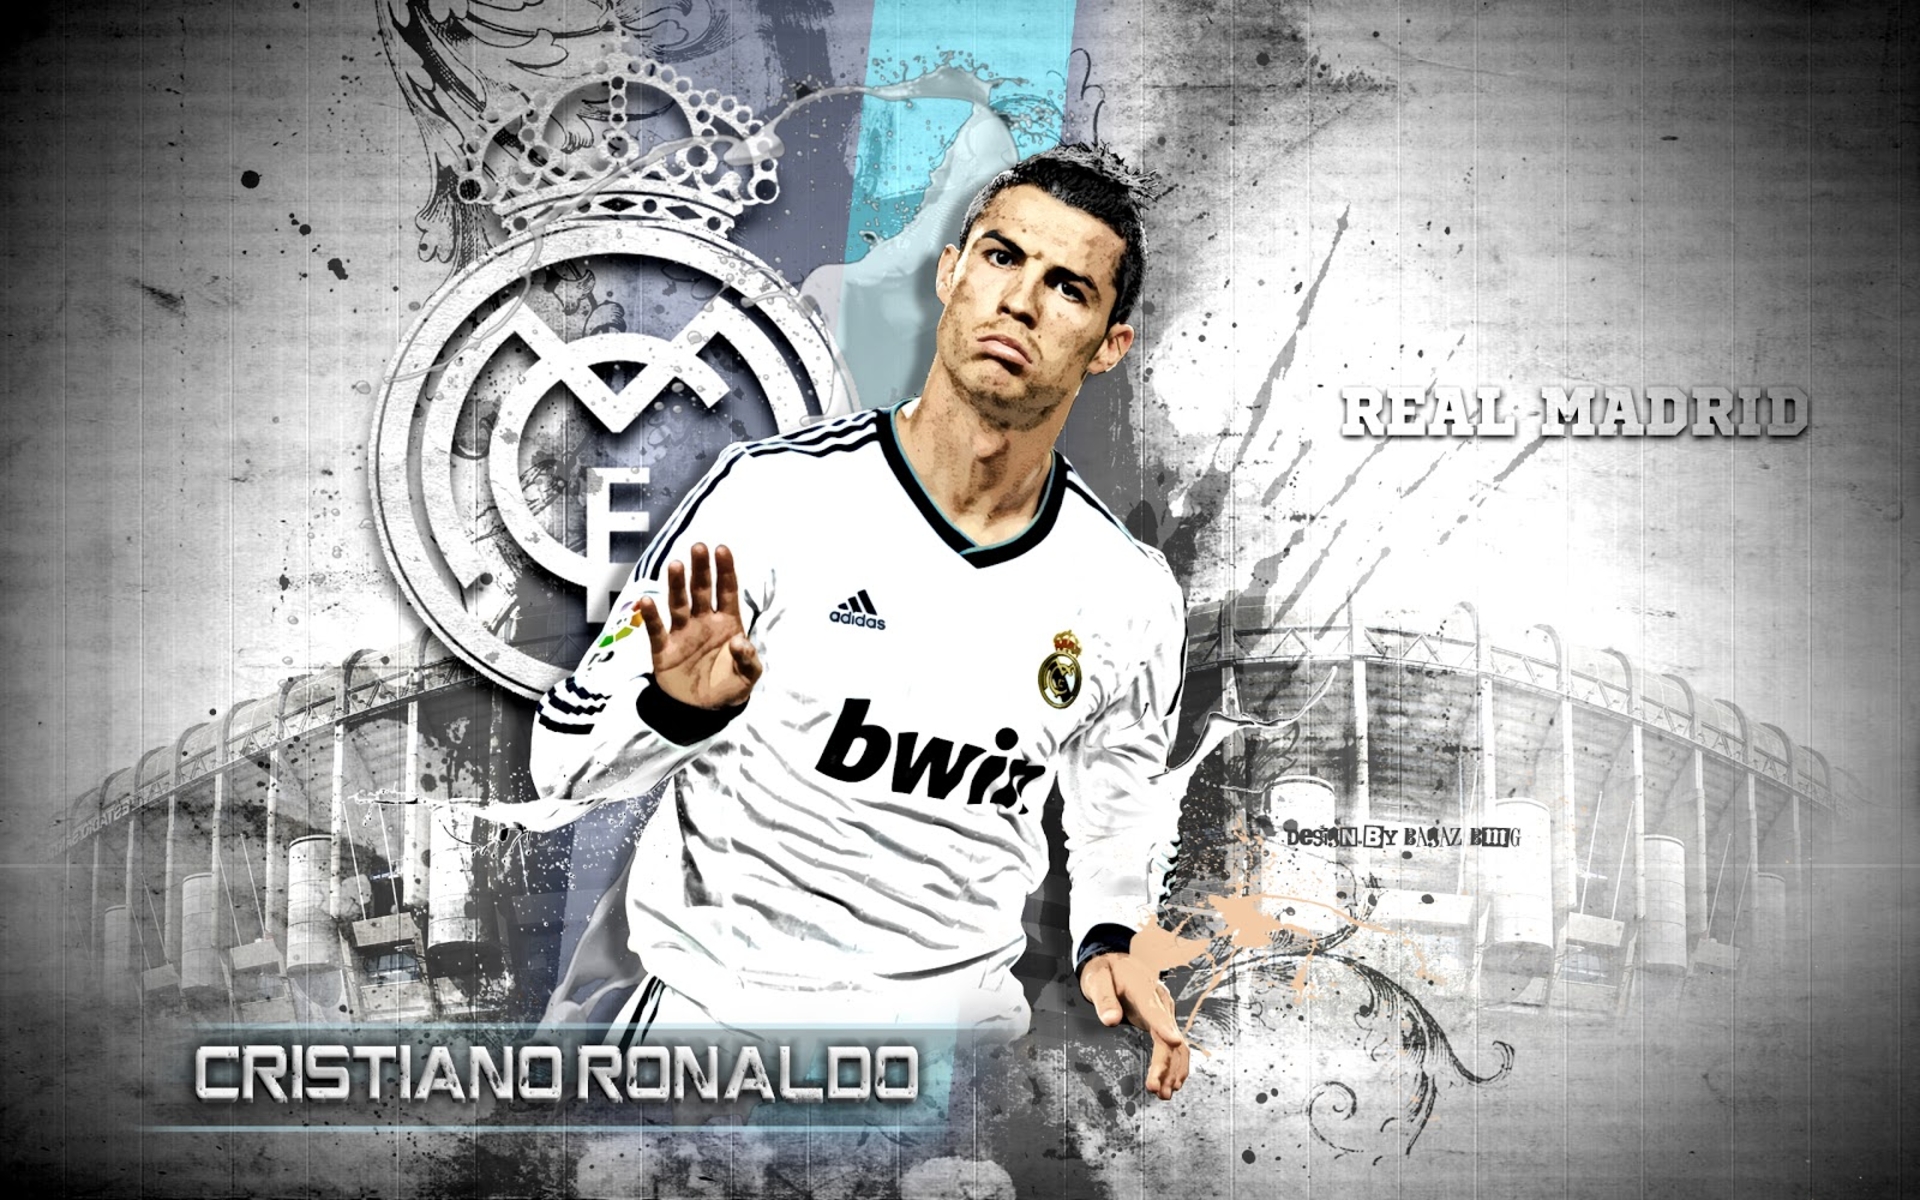 Cristiano Ronaldo Profil Wallpaper Image High